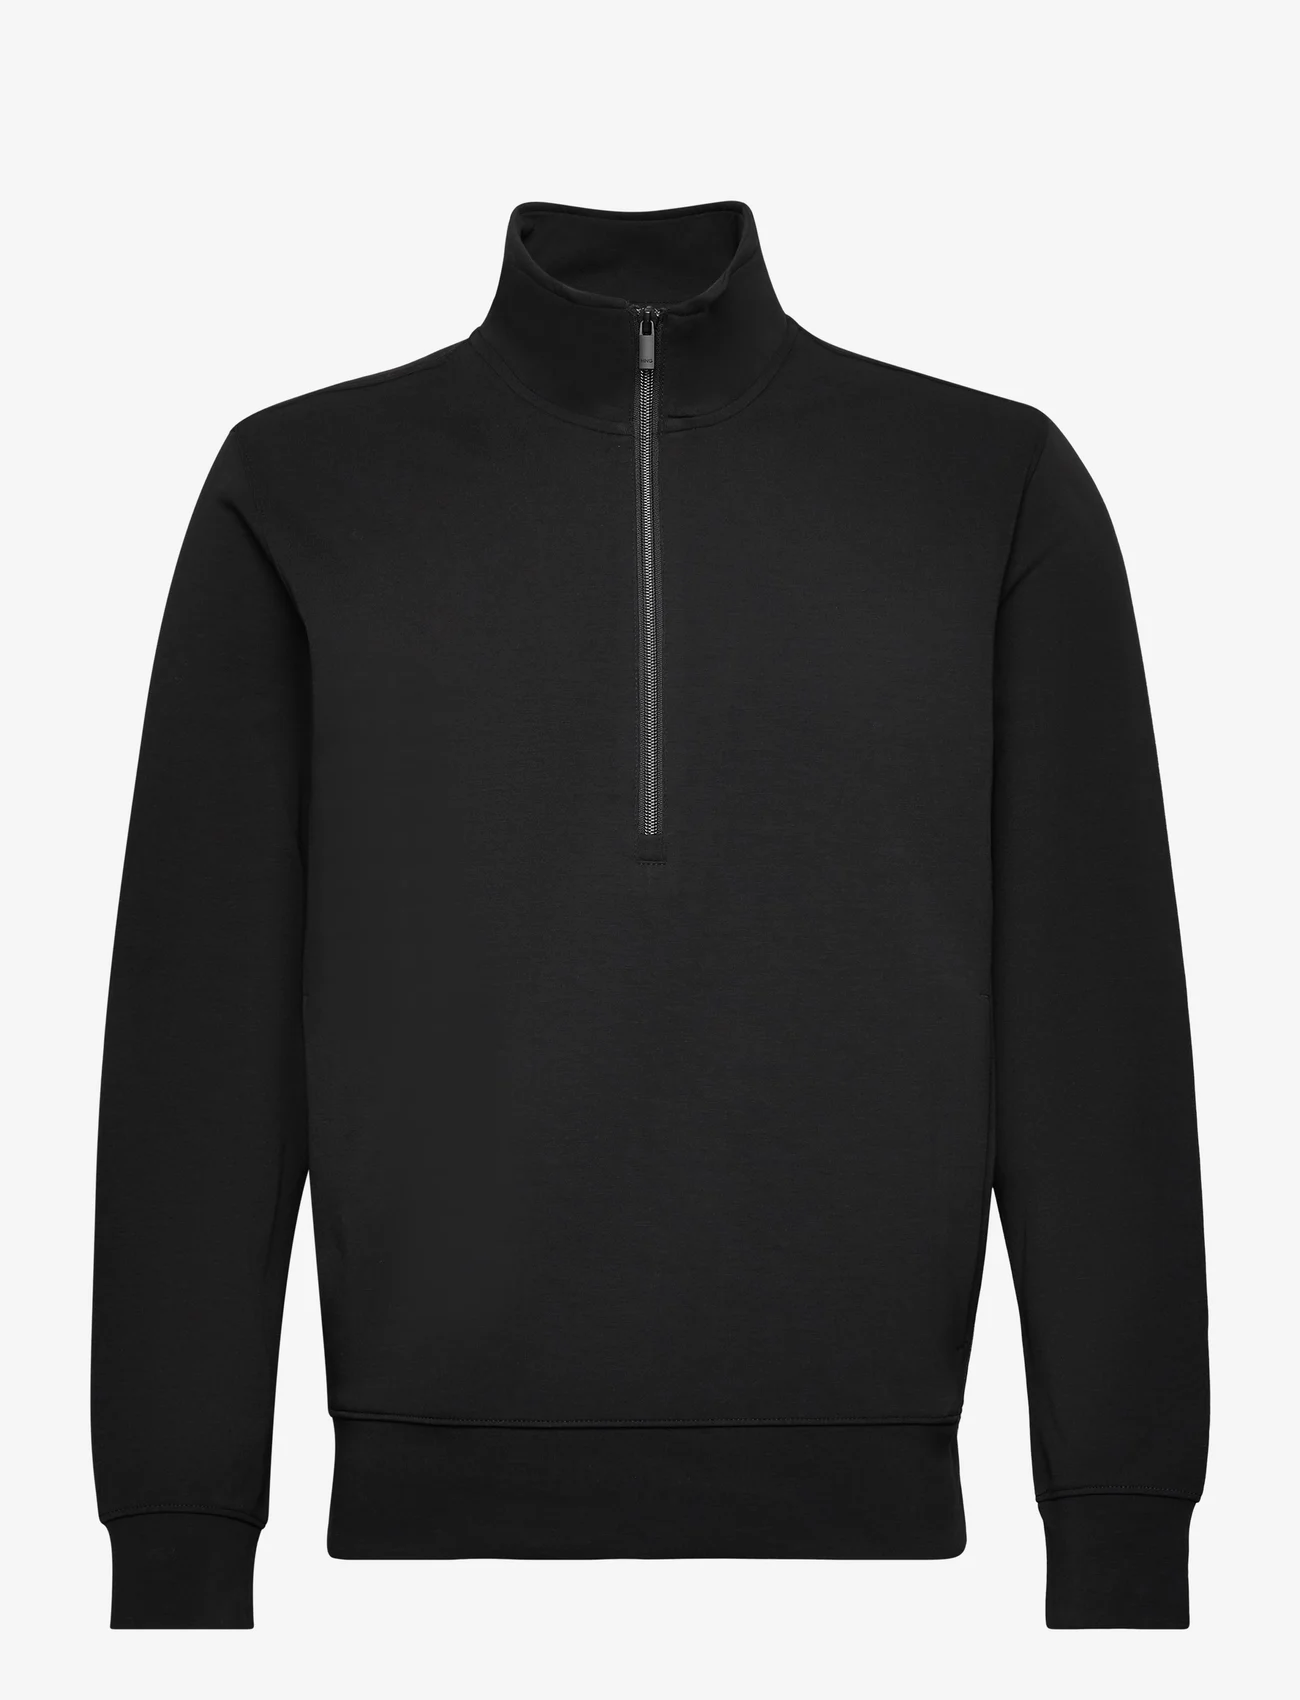 Mango - Breathable zip-neck sweatshirt - sweatshirts - black - 0